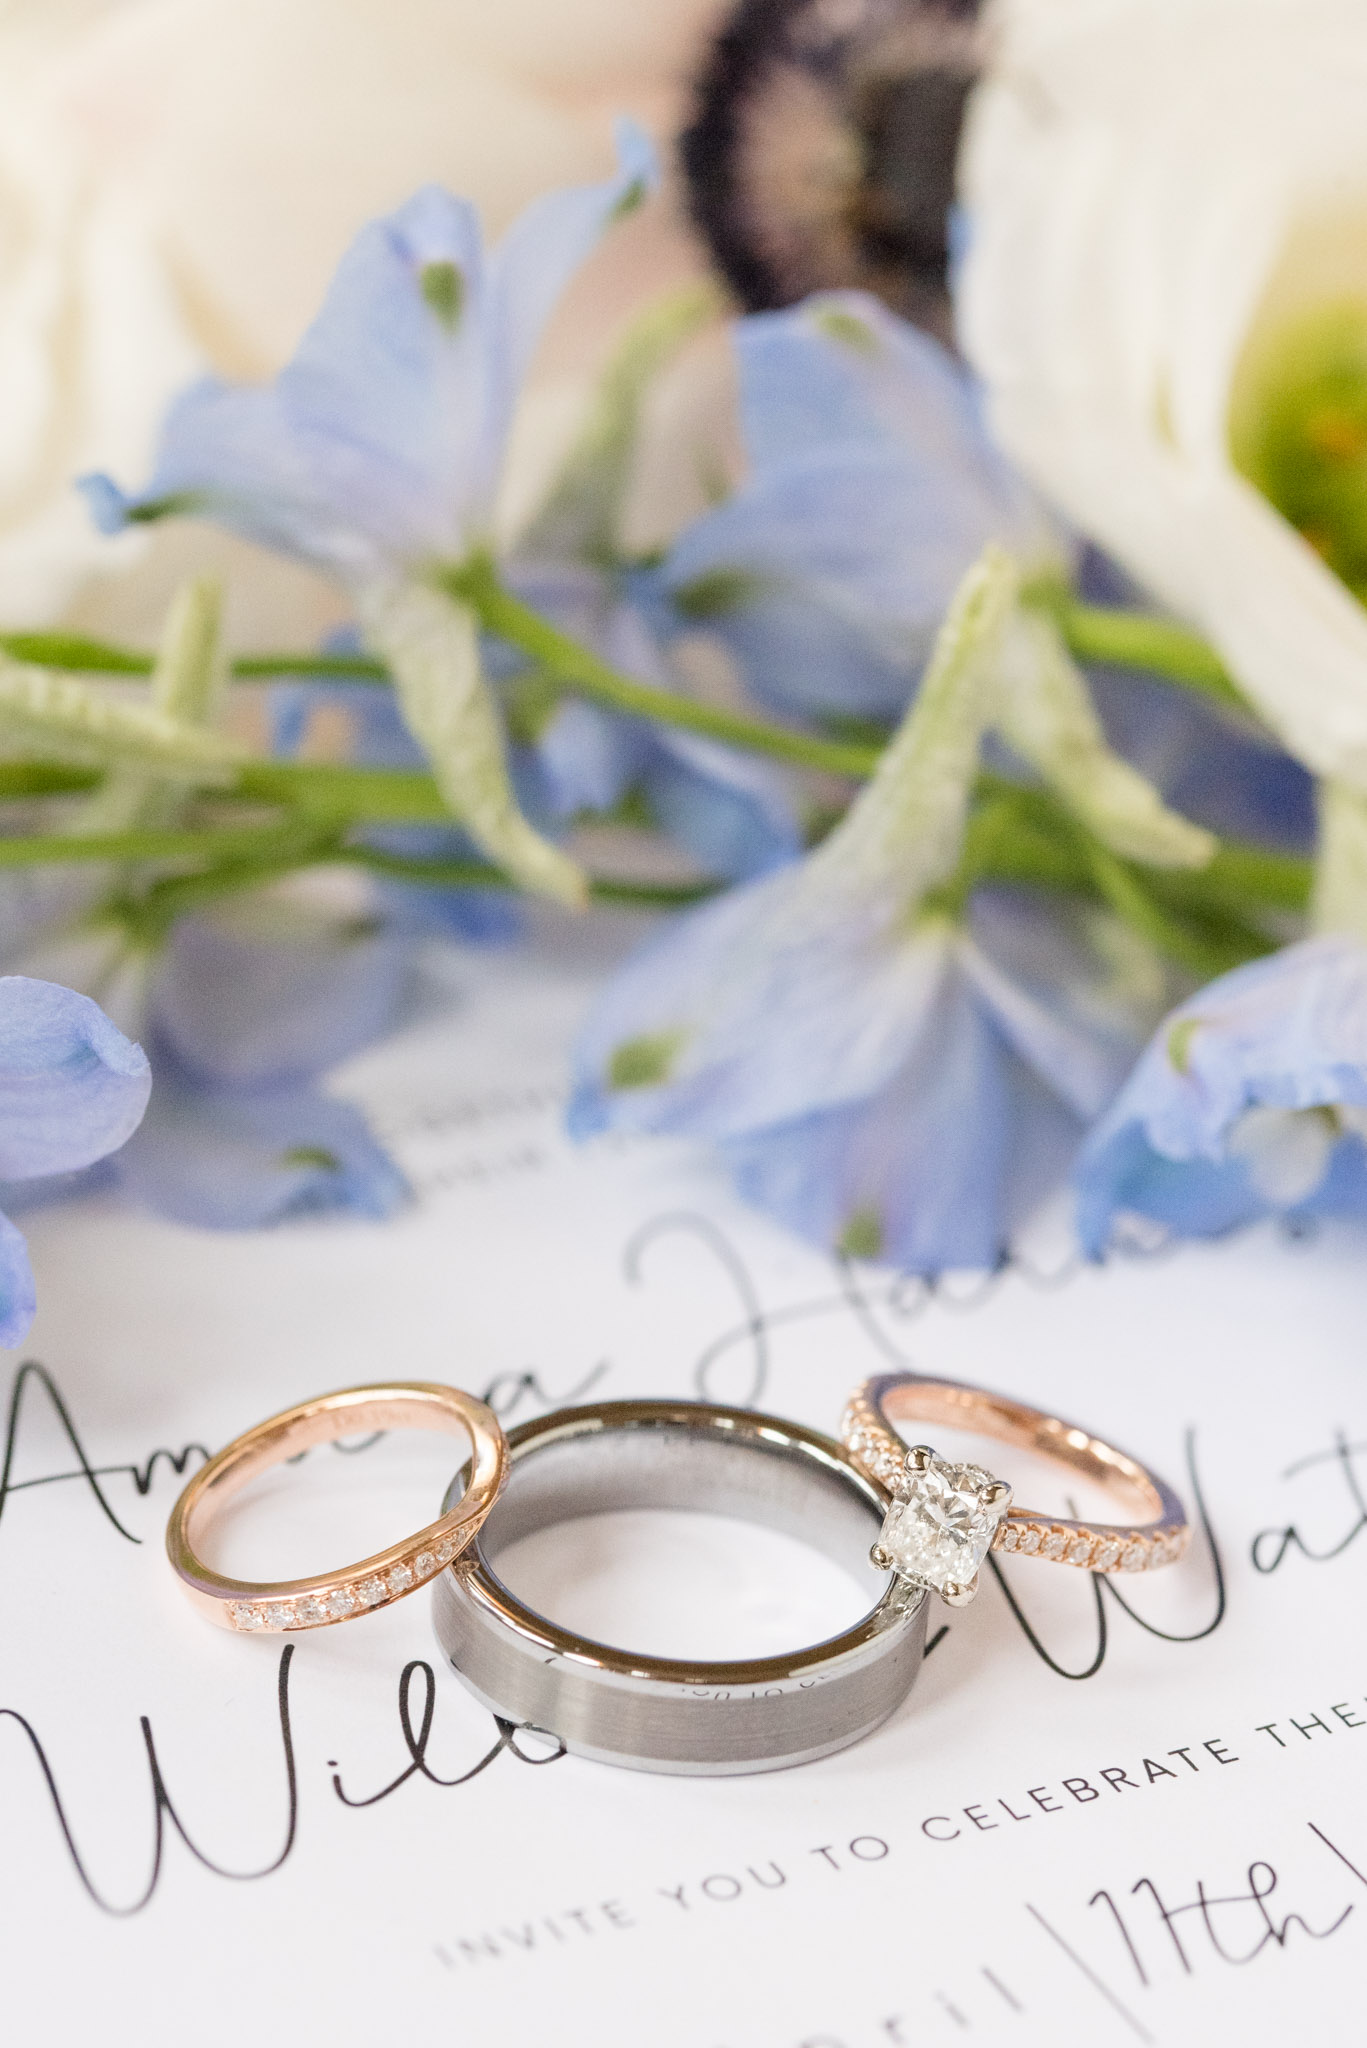 Wedding rings sit on invitation.